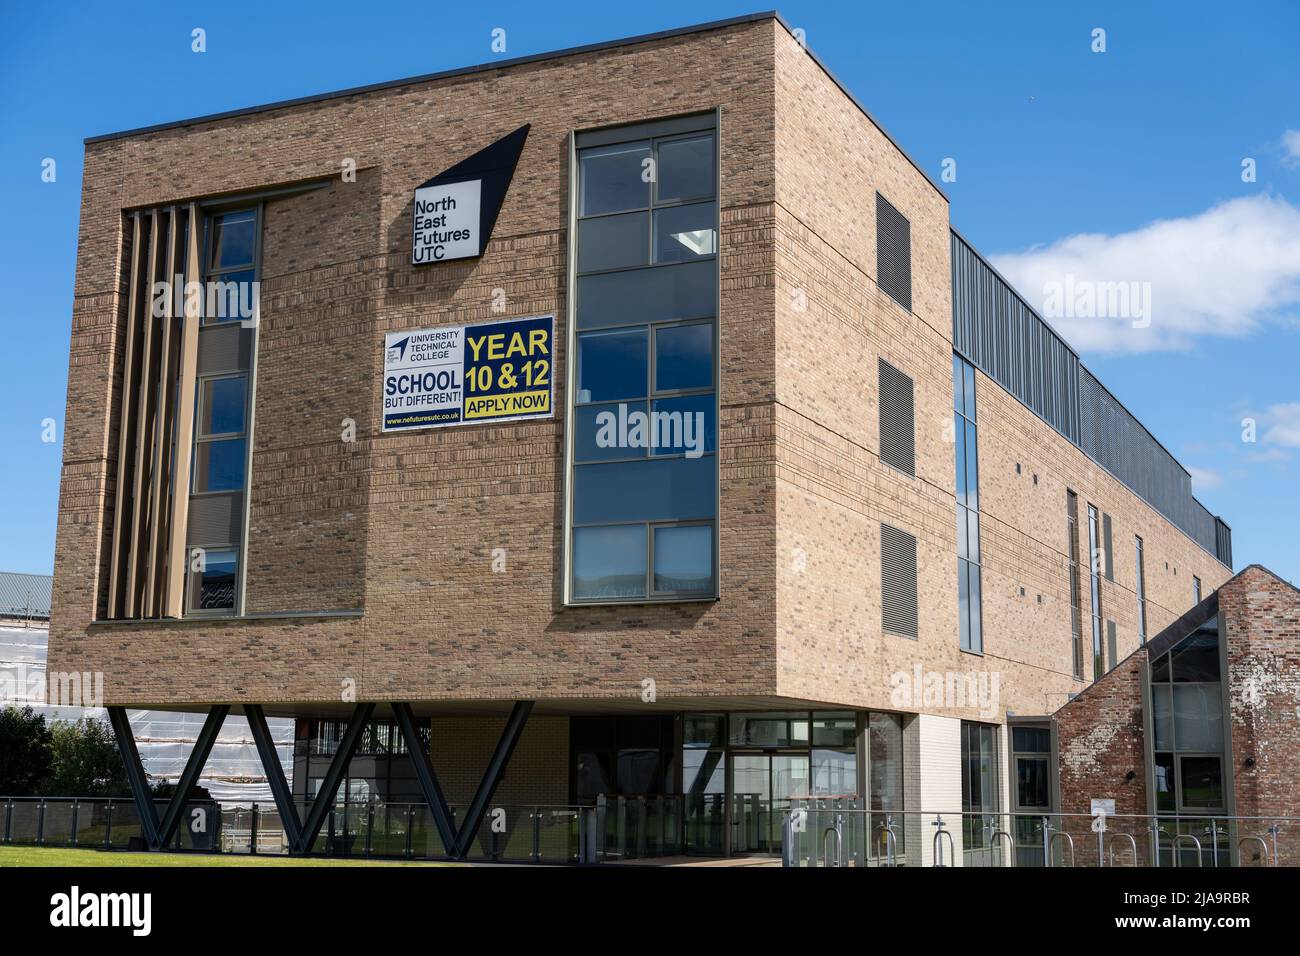 North East Futures UTC, Fachschule für Wissenschaft für 14-19s im Stephenson Quarter, Newcastle upon Tyne, Großbritannien. Stockfoto